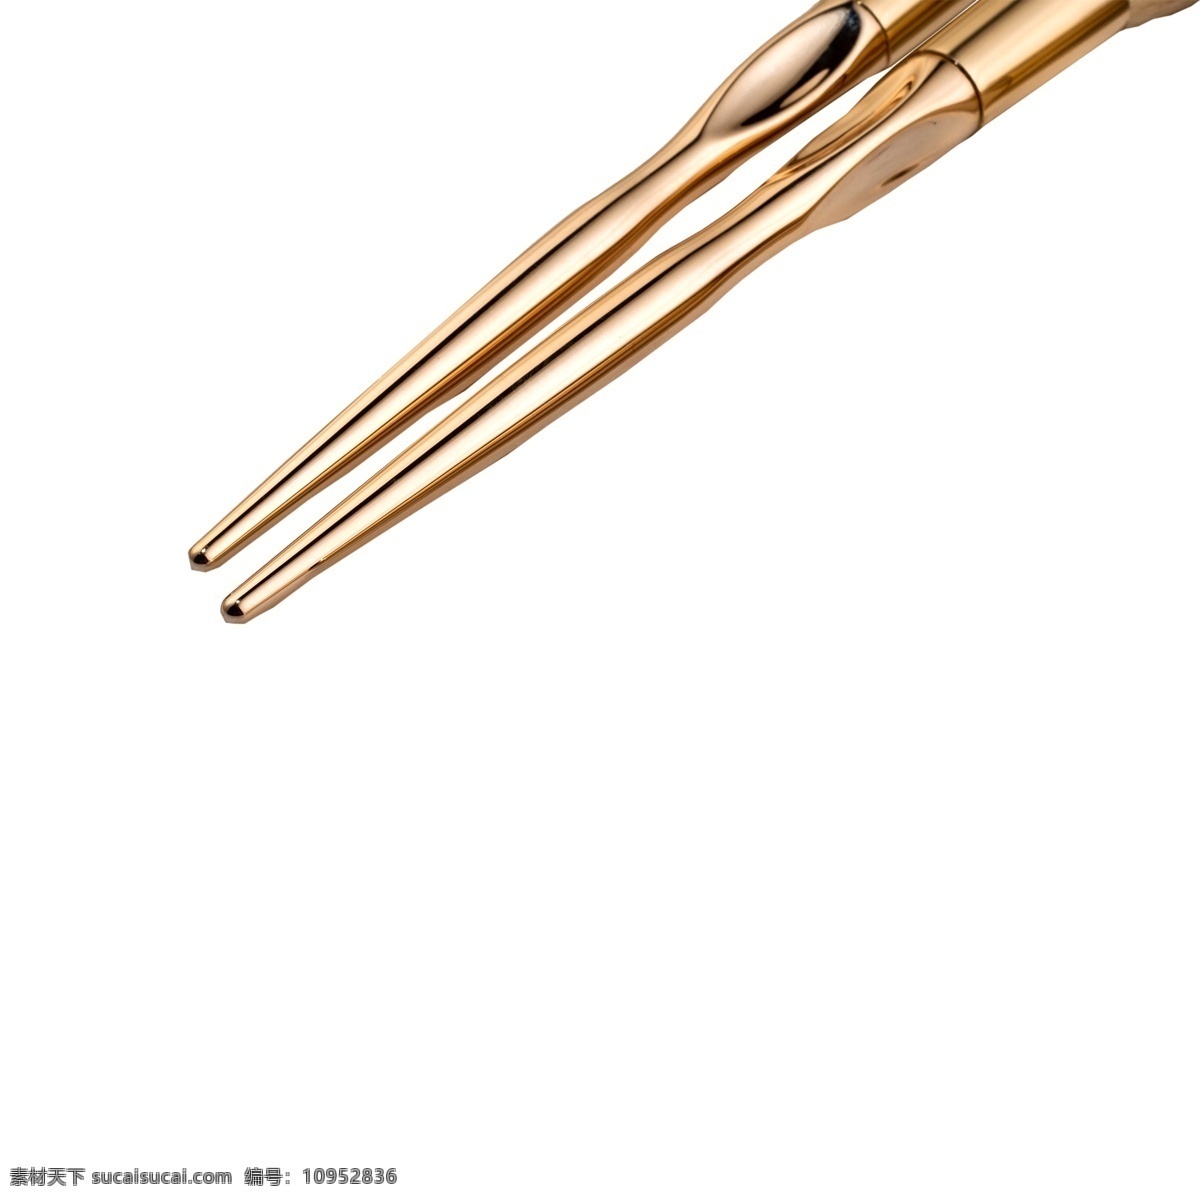 两 支 化妆 笔杆 简约 品牌 金属 两根 金色 化妆笔杆 颜色 物品 耐用 亮漆 方便 携带 手柄 简单